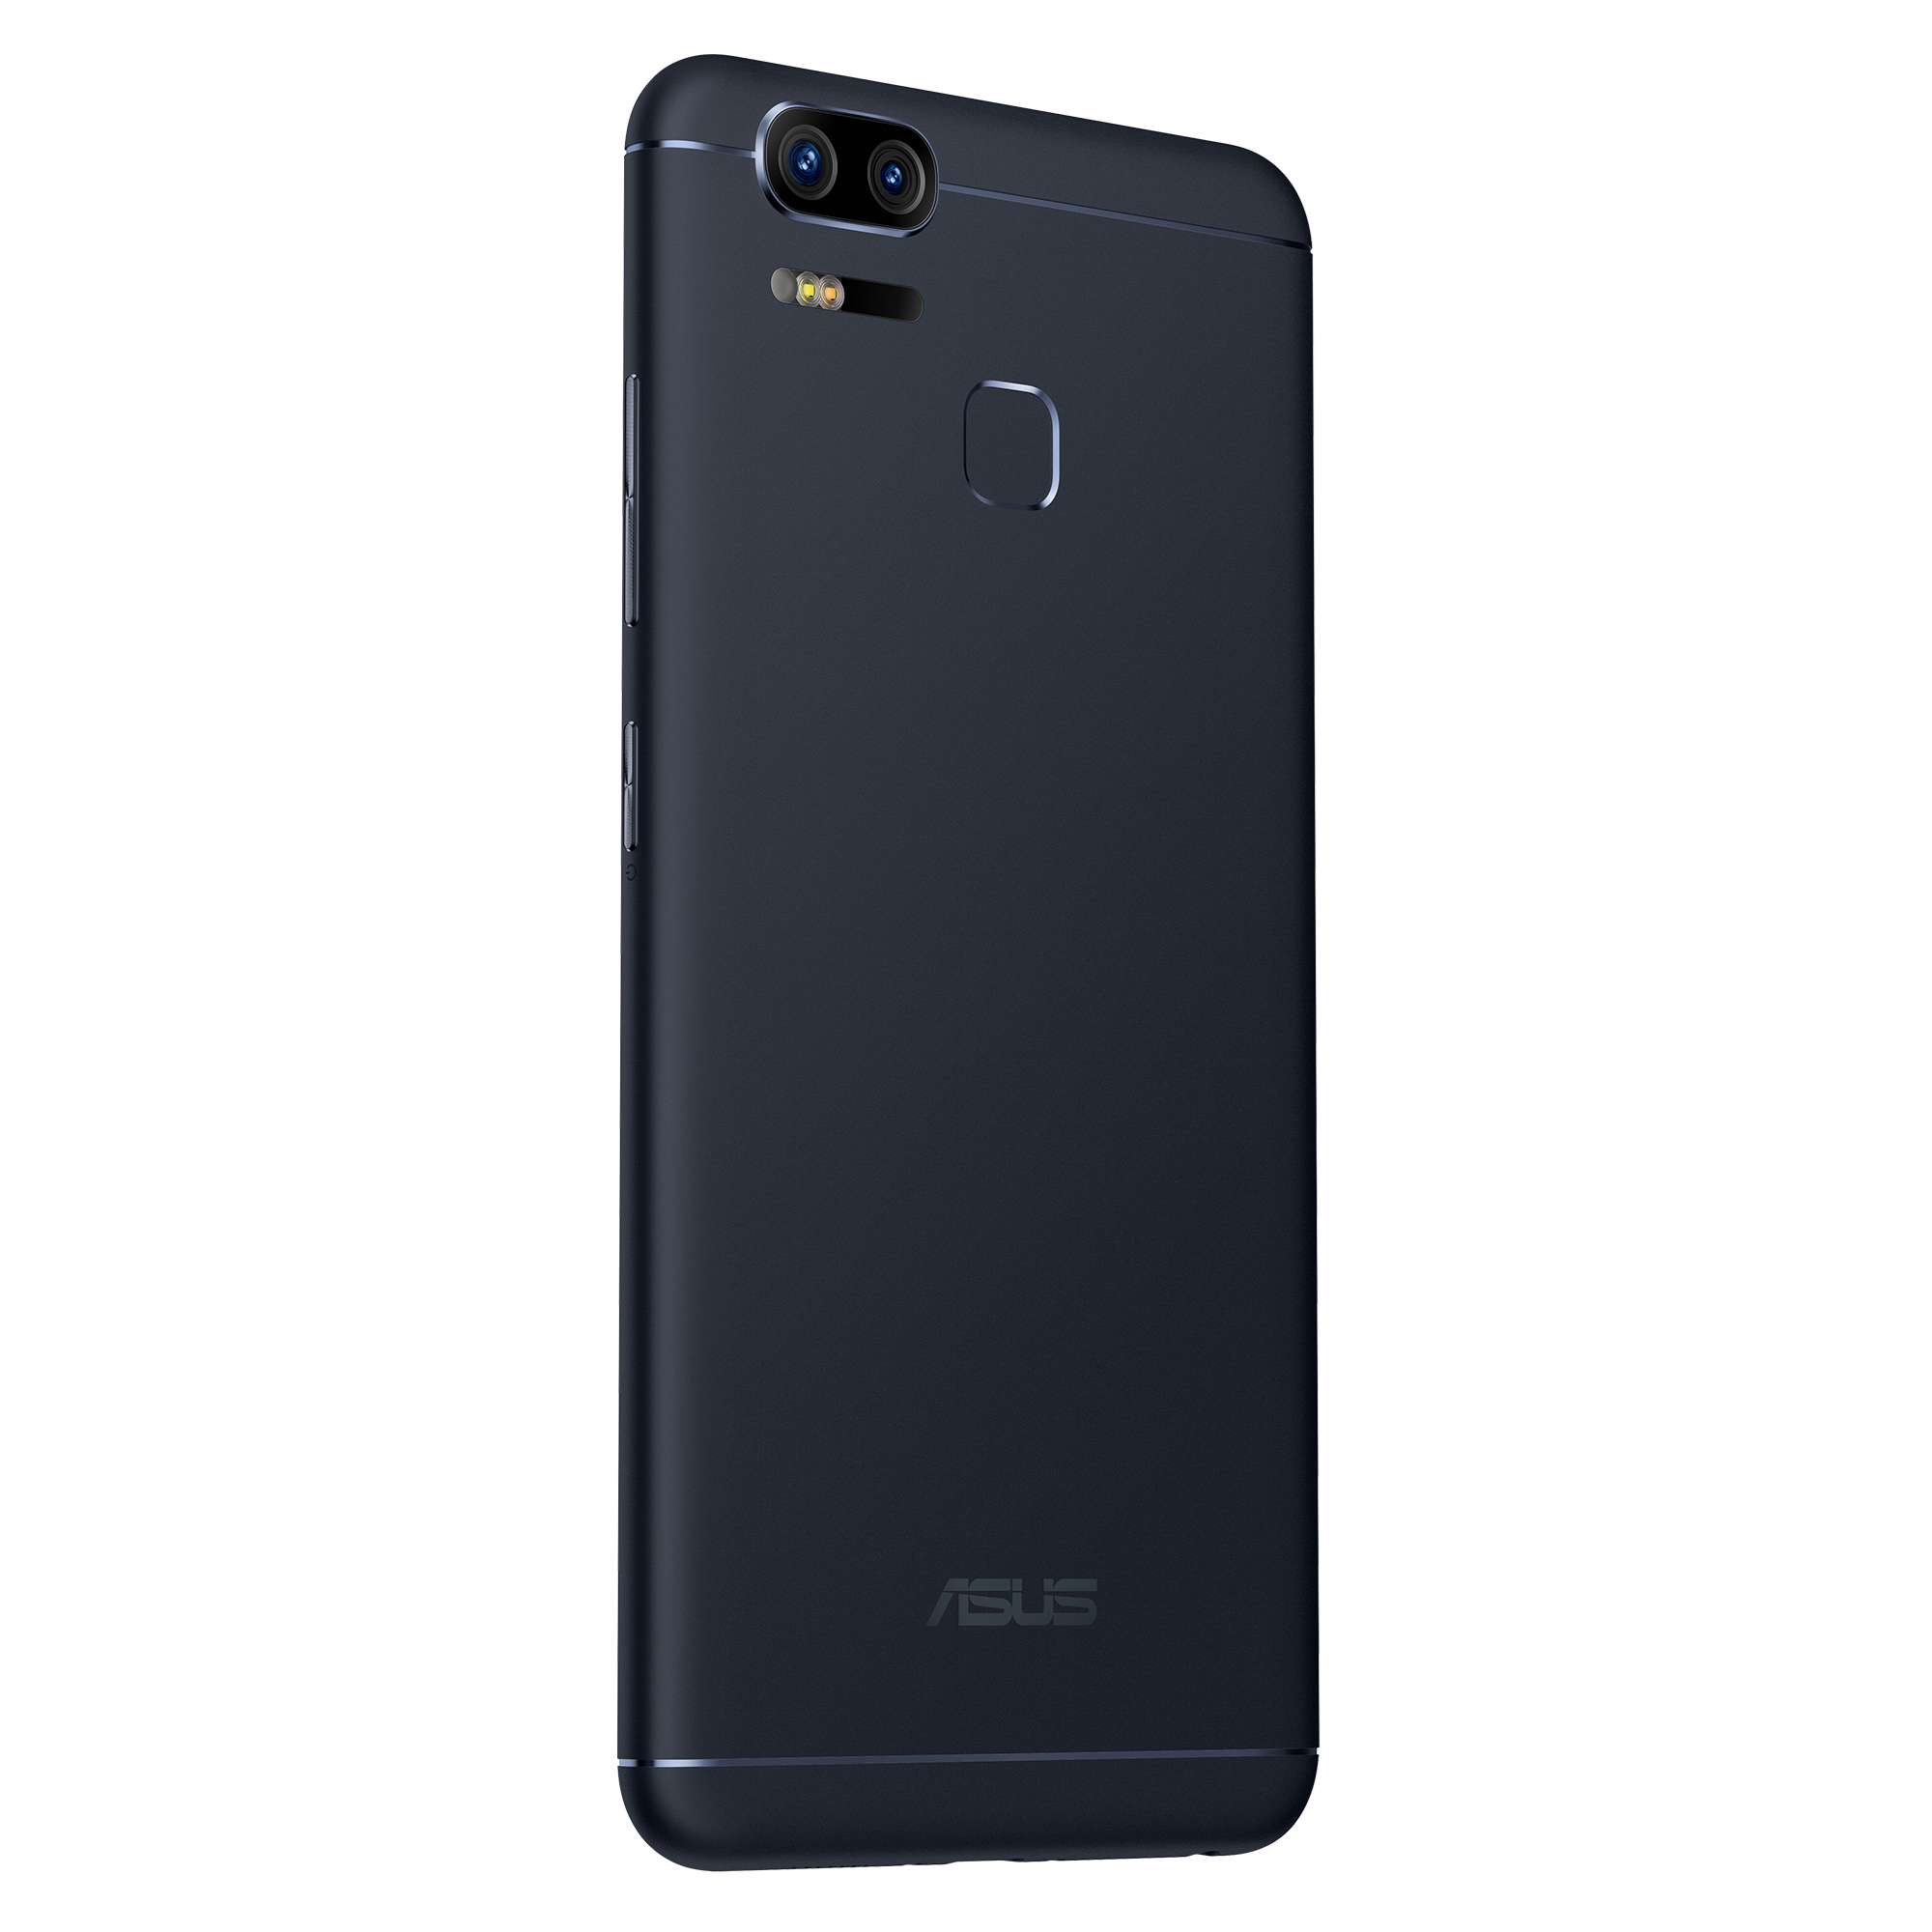 新品 ASUS ZenFone Zoom S Silver ZE553KL